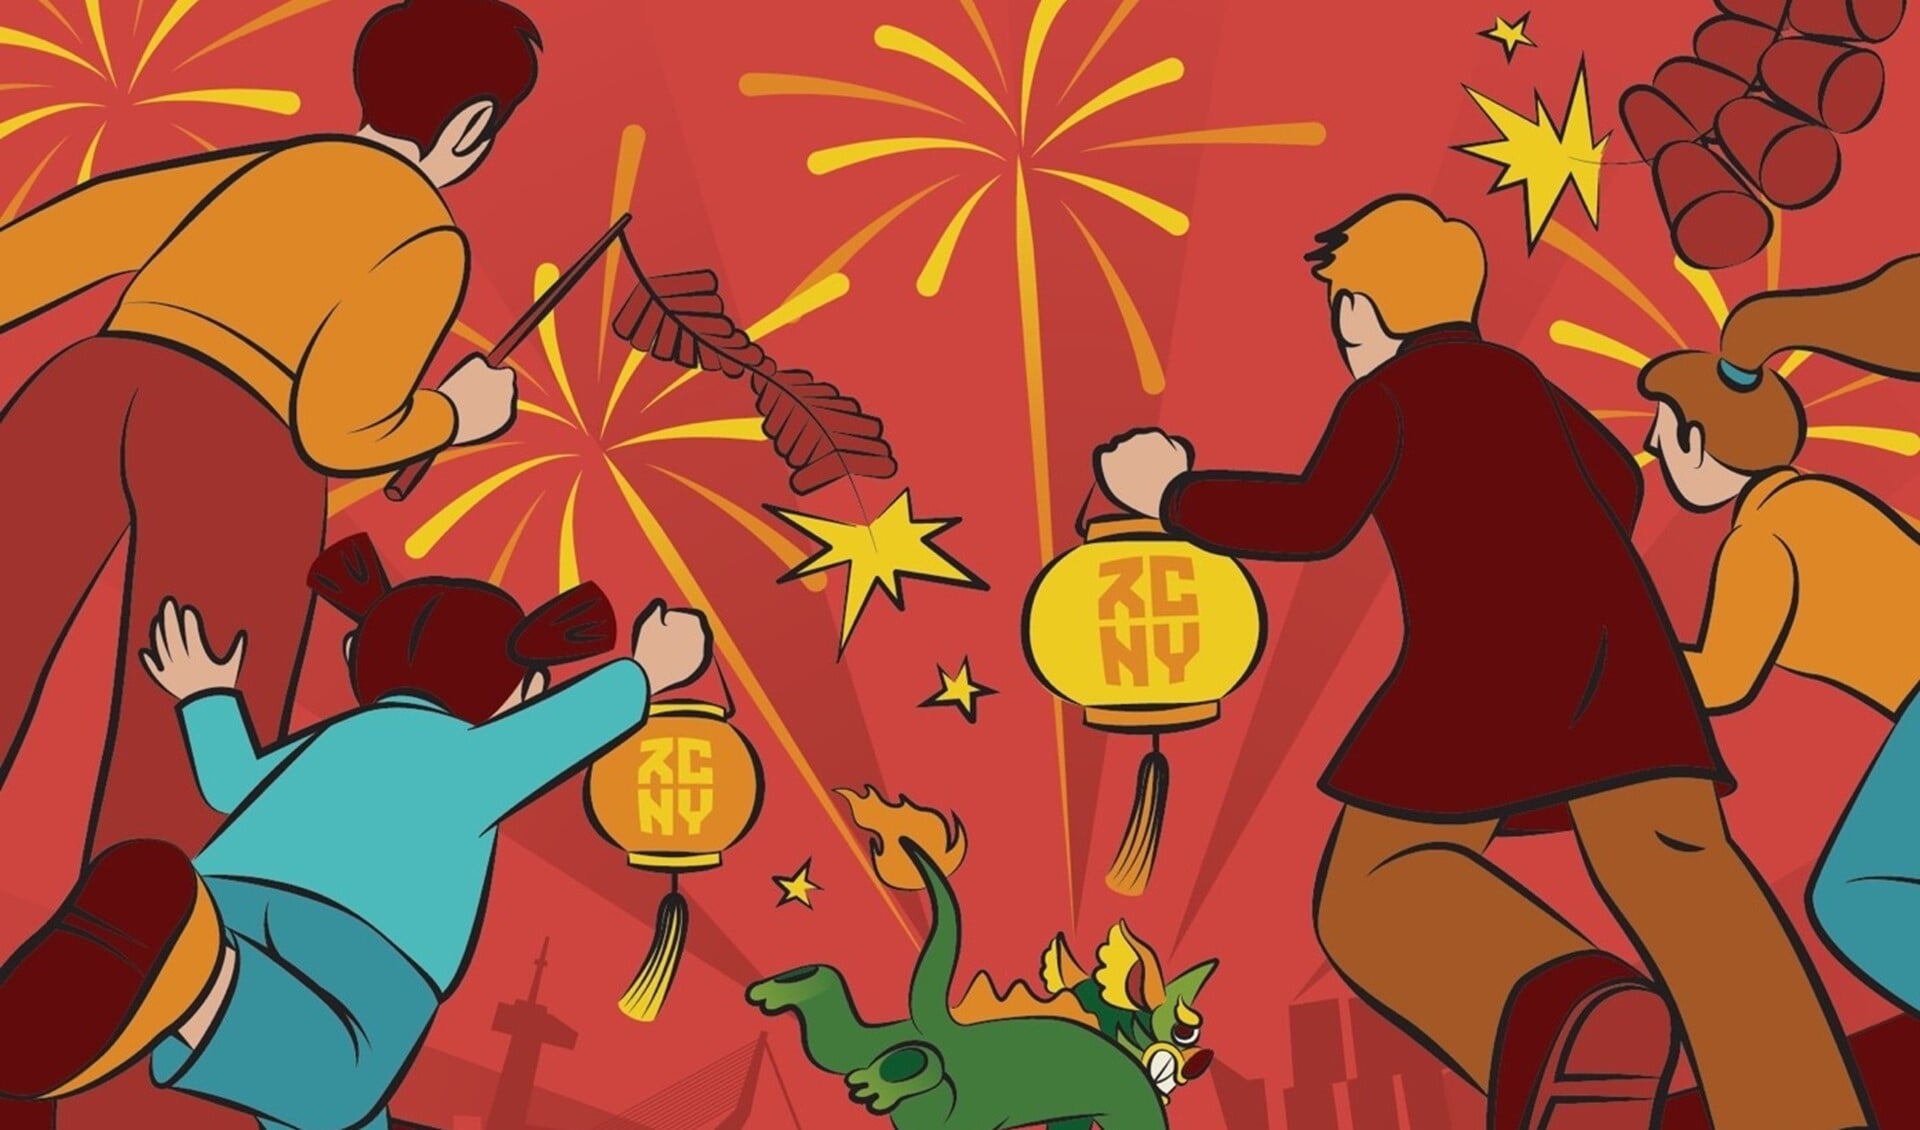 Beeld: Yan Zhang. Zij maakte drie illustraties om het culturele verhaal van Chinees nieuwjaar, over het monster Nian, te vertellen. Zie ook www.RCNY.nl 